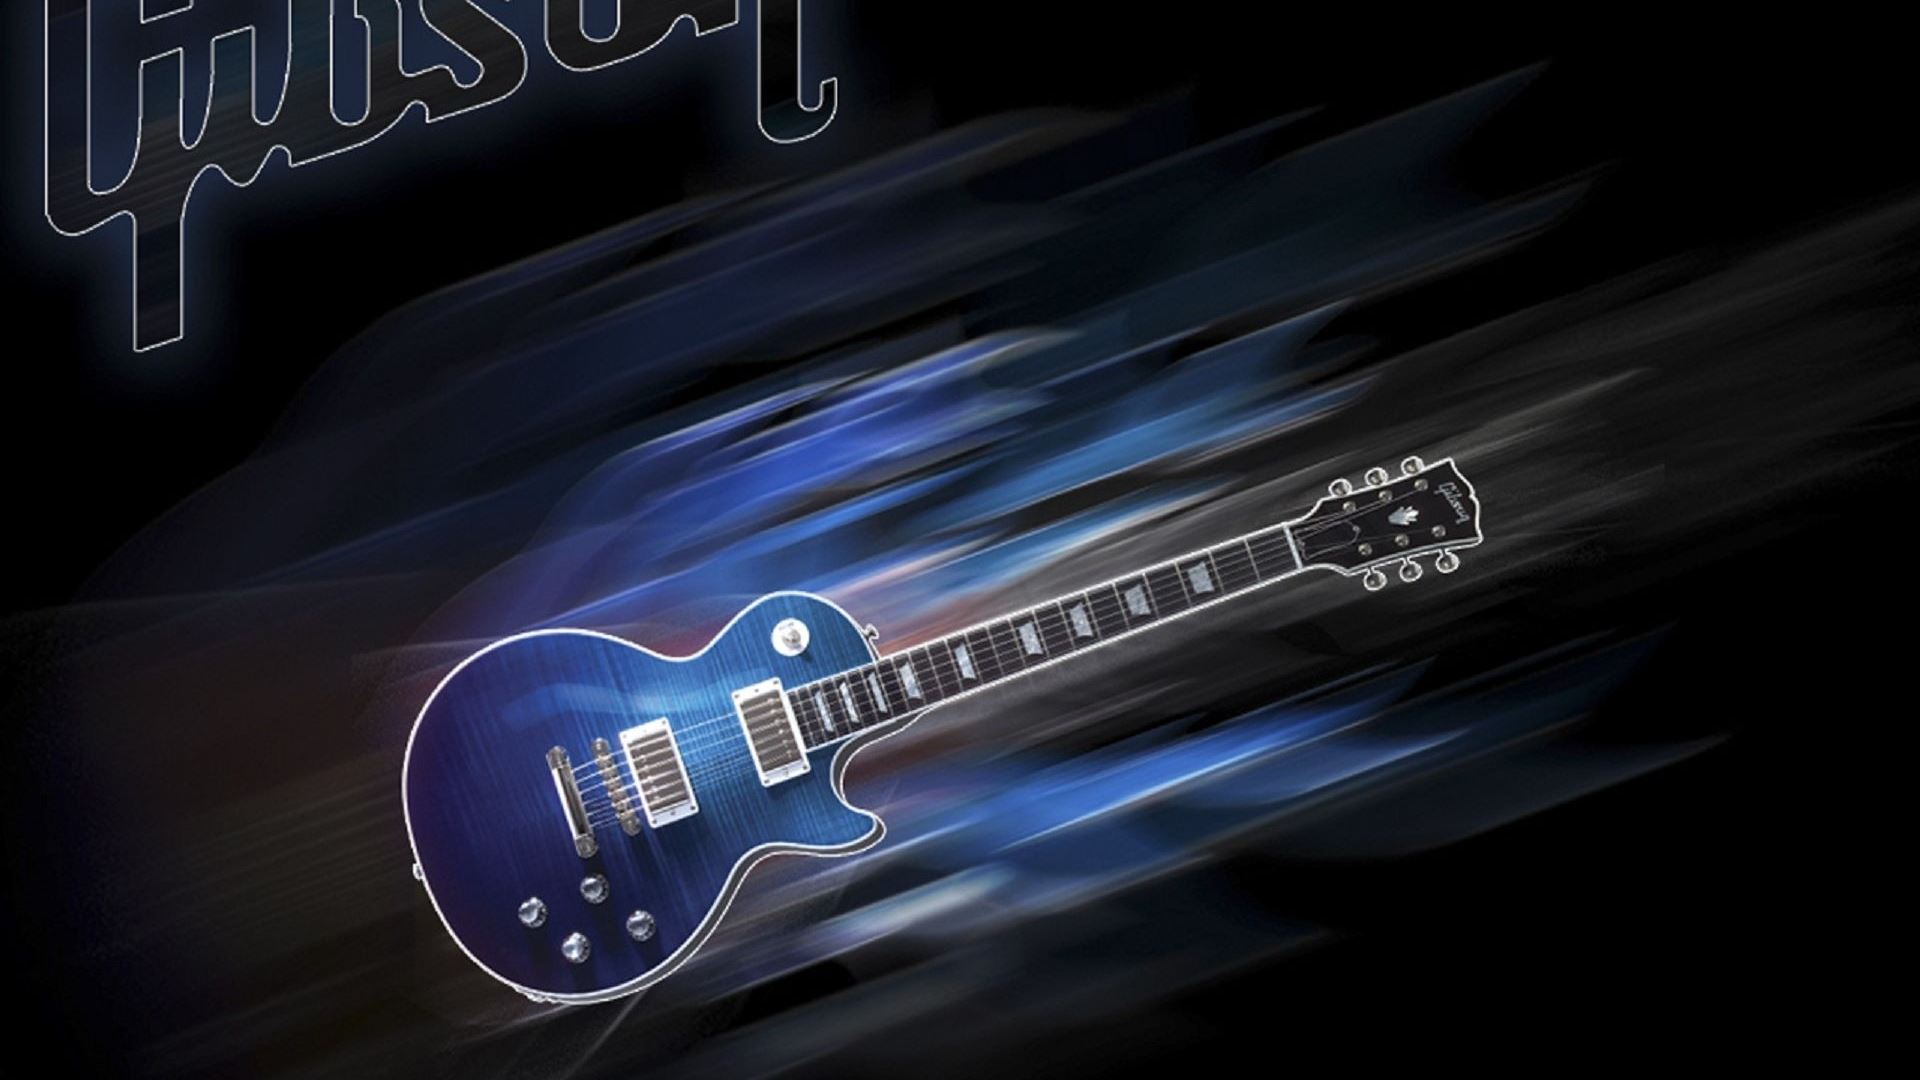 Music Guitar Gibson Macbook Air Wallpaper Download Allmacwallpaper